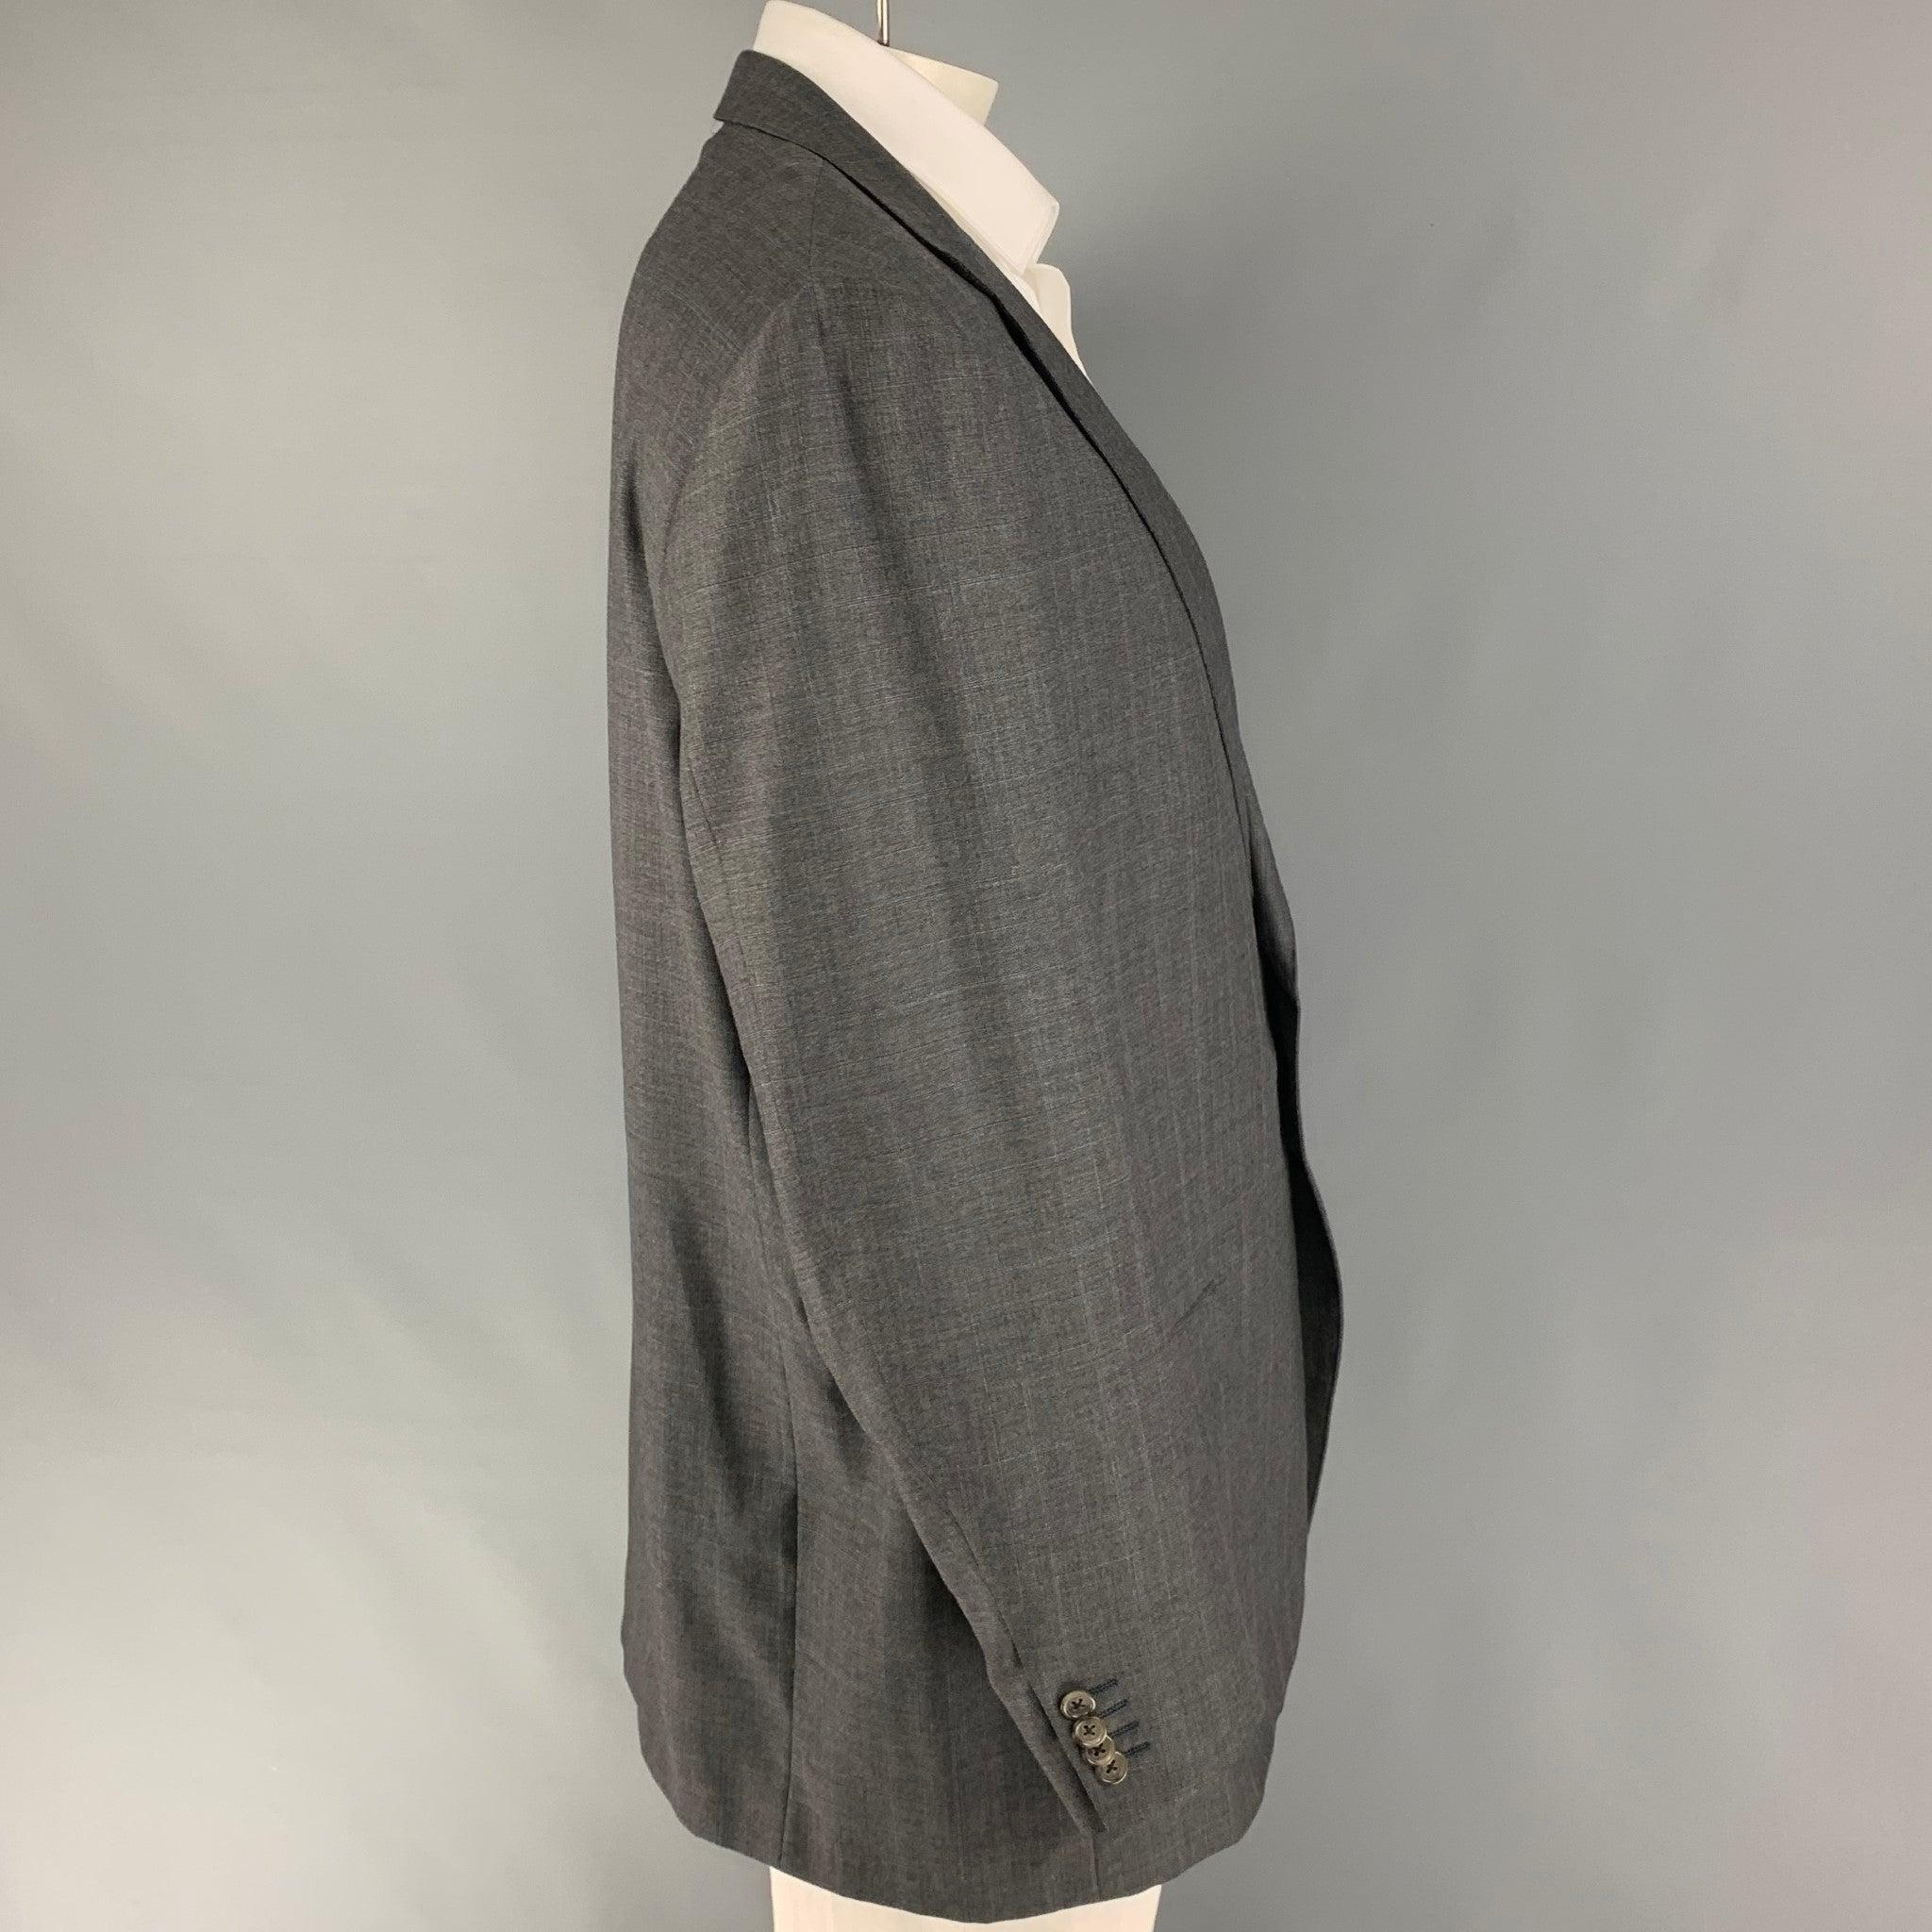 ERMENEGILDO ZEGNA
Ce manteau de sport est présenté dans un tissu de laine gris avec une doublure complète. Il présente un revers à cran, des poches à rabat et une fermeture à double bouton. Fabriquées en Italie. Très bon état d'origine. 

Marqué :  